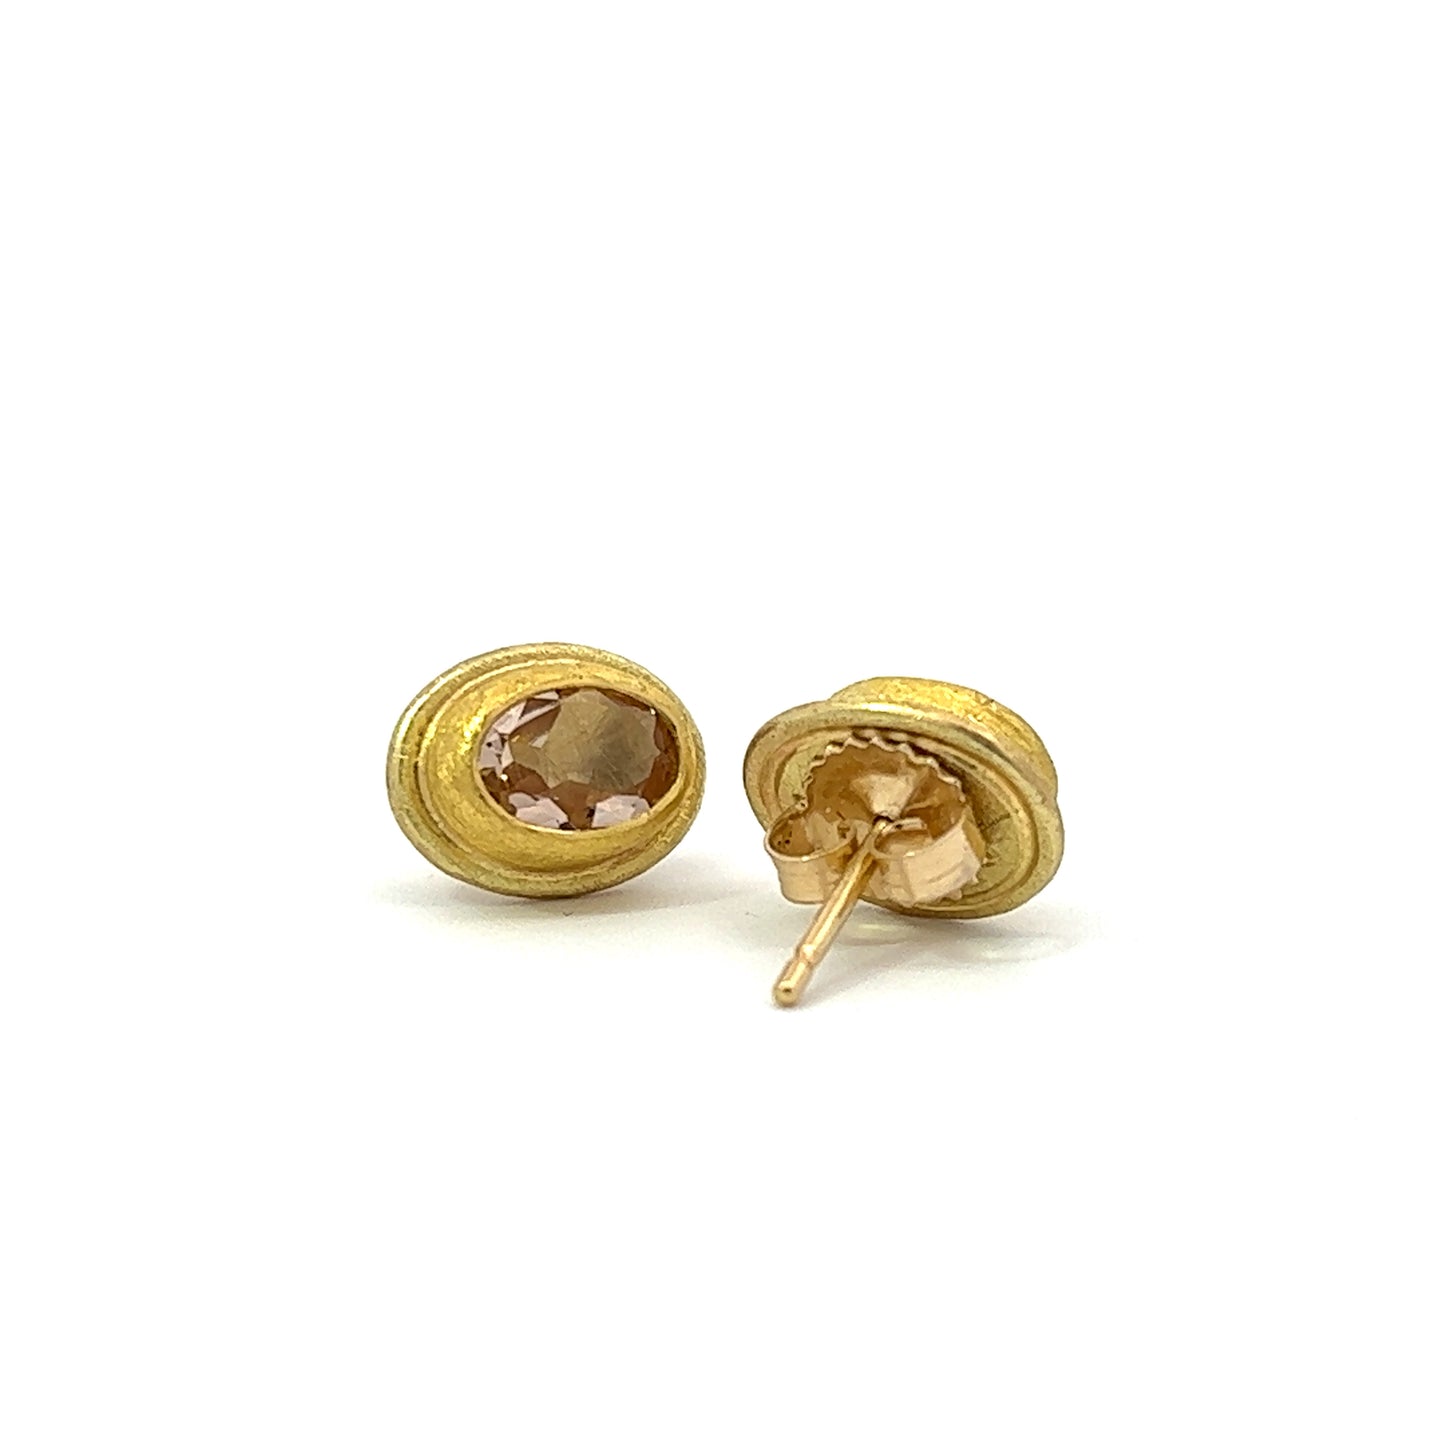 faceted morganite oval stud earrings